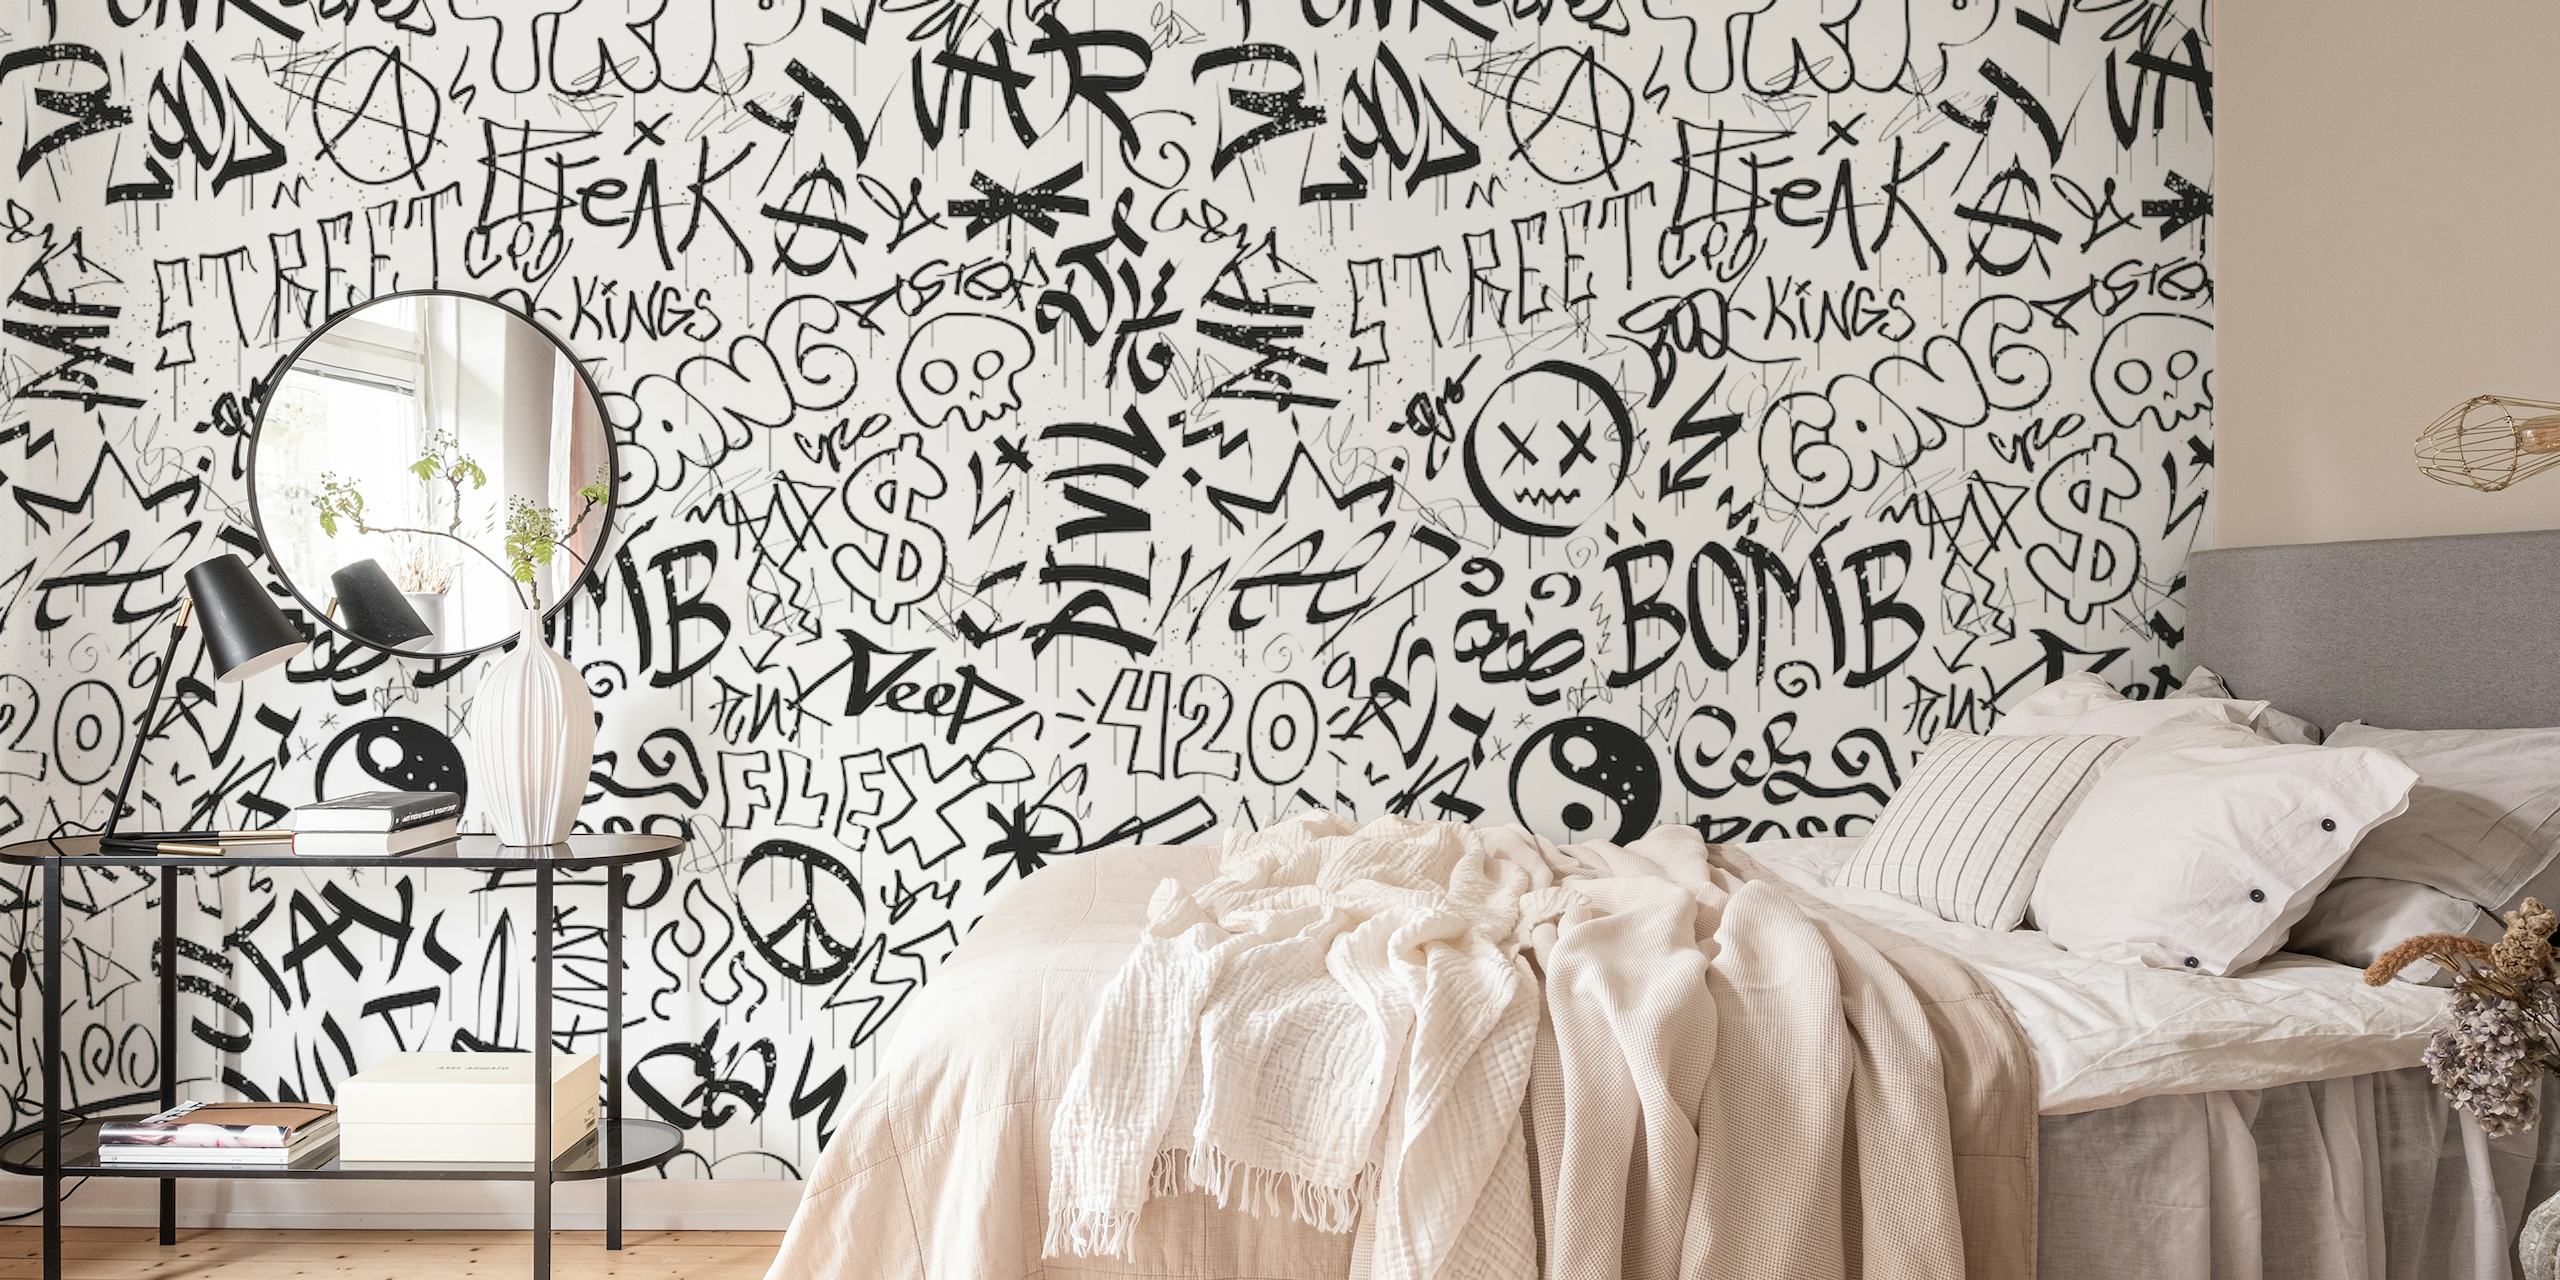 Czarno-biała fototapeta w stylu graffiti z różnymi znacznikami i postaciami.